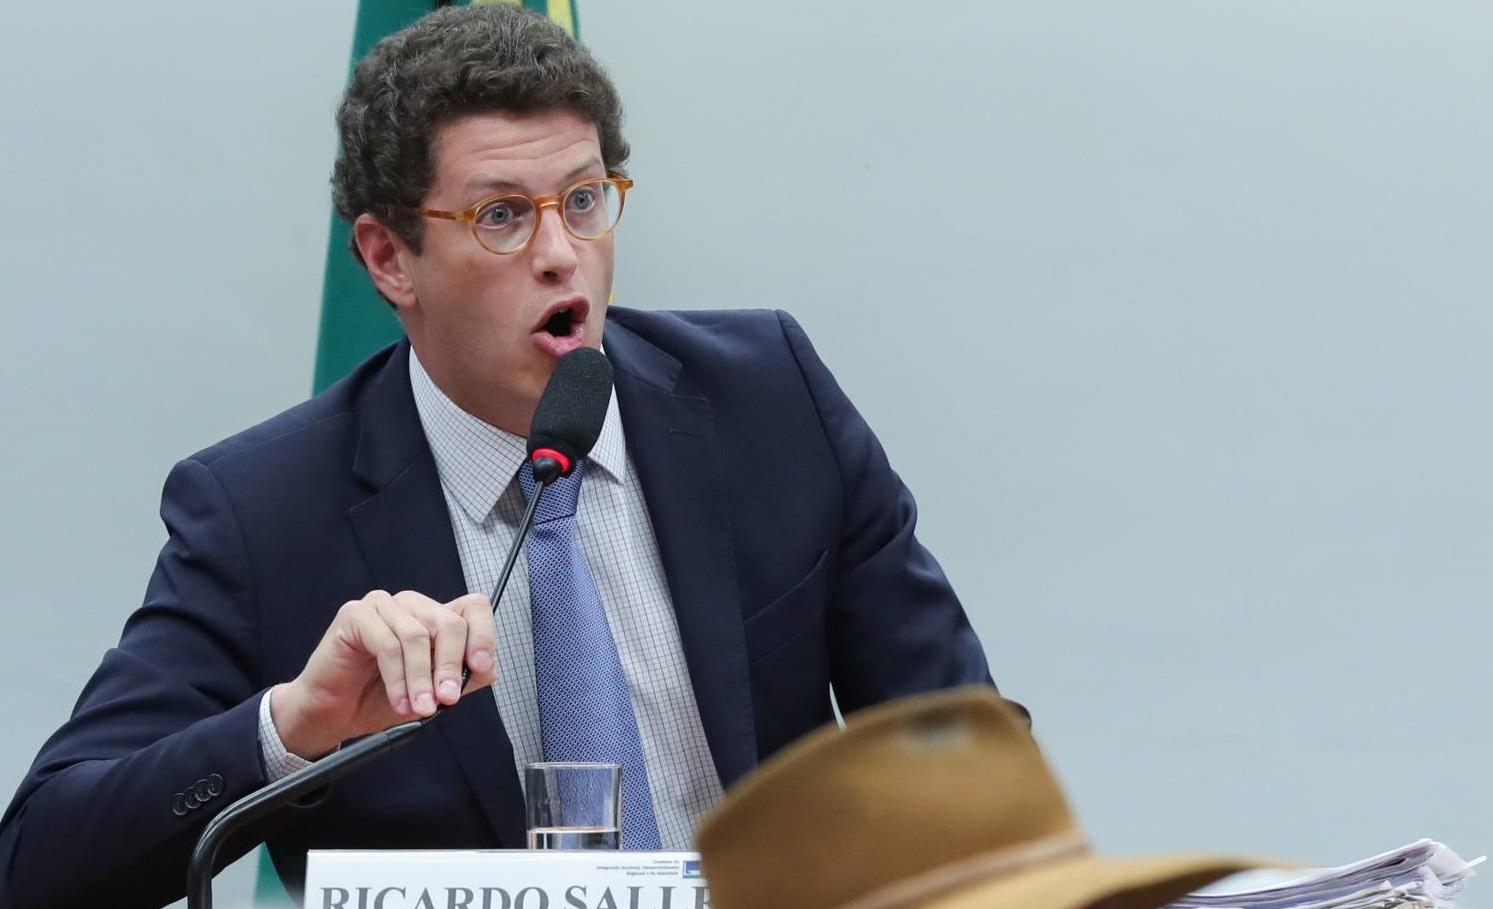 Bancada do PSOL protocola convocação de Ricardo Salles para plenário da Câmara